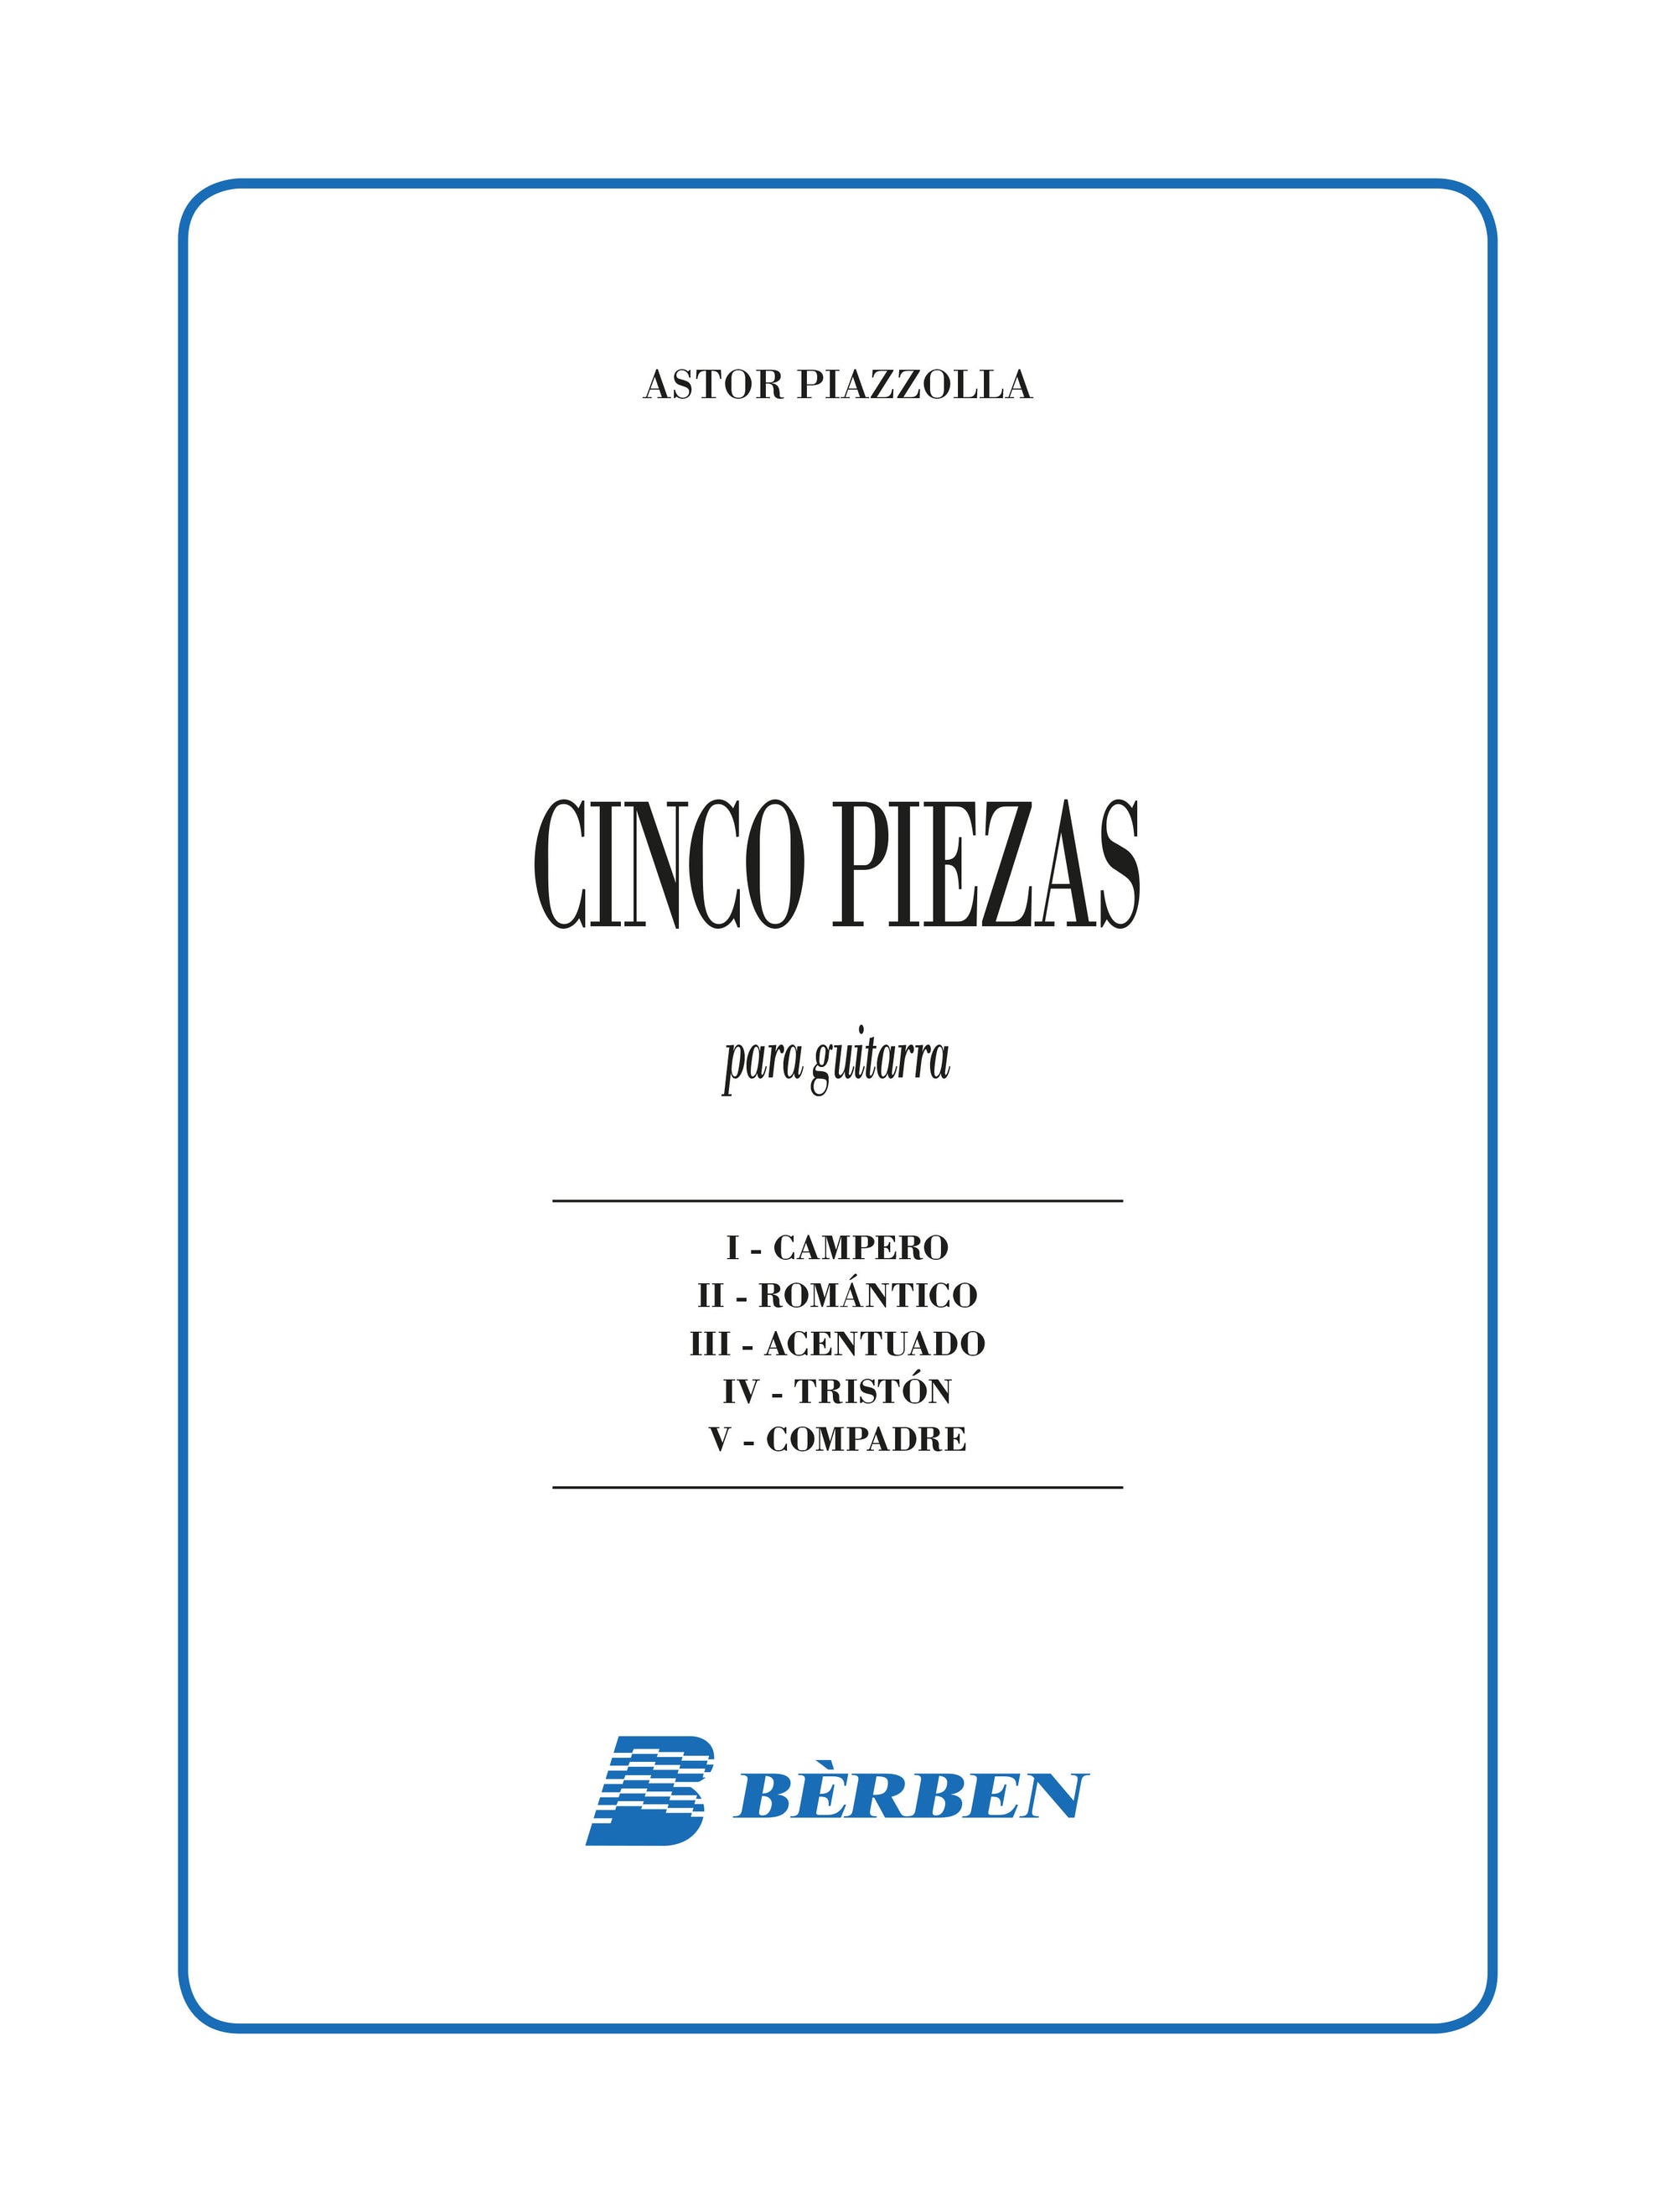 Piazzolla: Cinco Piezas